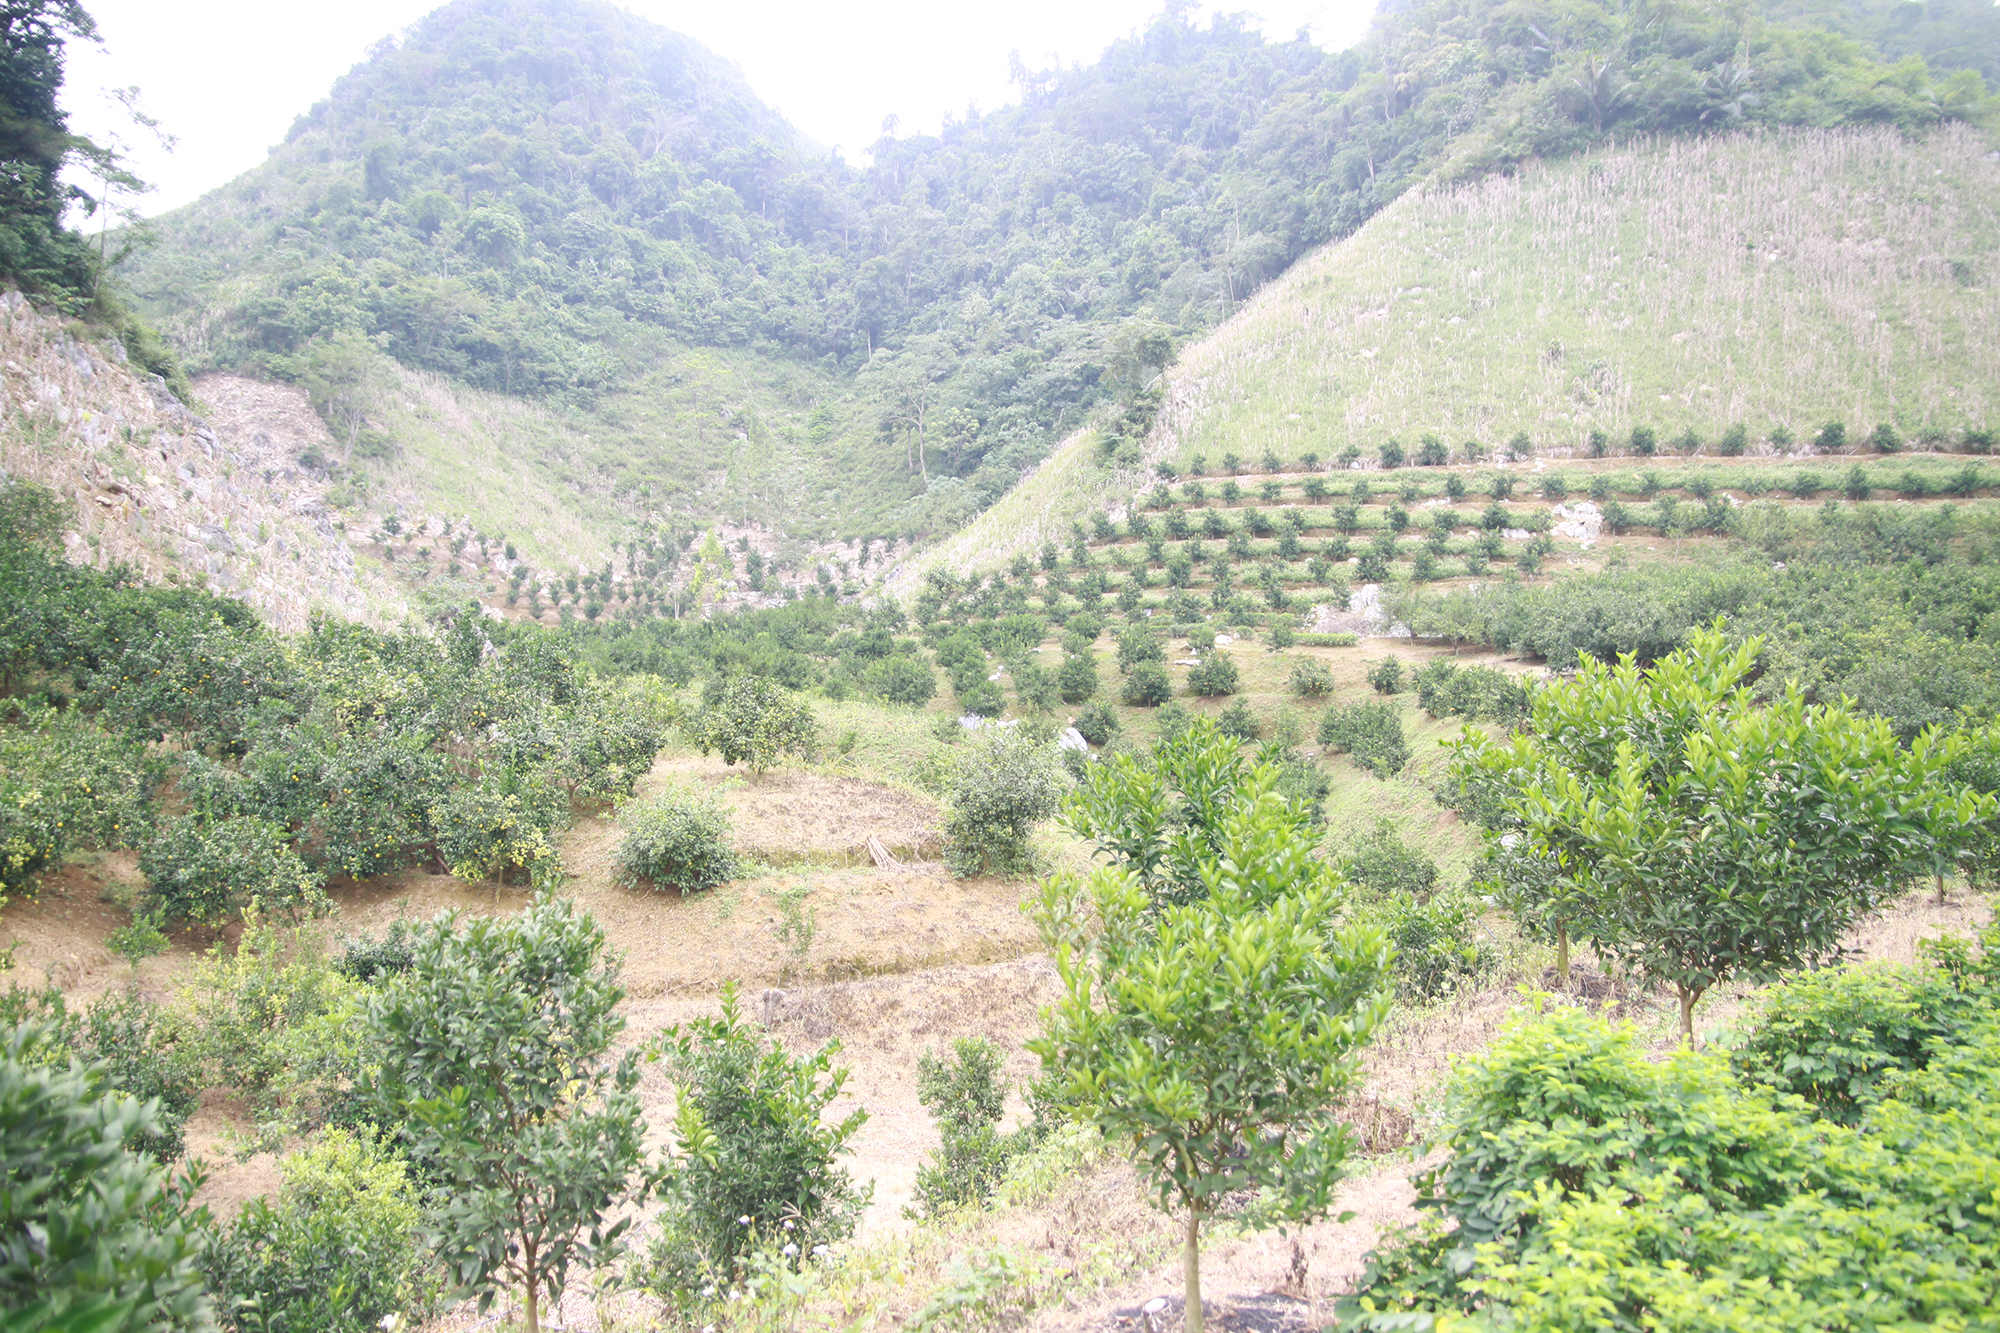 Hàng ngàn ha đất dốc ở Sơn La từng bỏ hoang, sản xuất kém hiệu quả đã được chuyển đổi sang trồng cây ăn quả mang lại hiệu quả kinh tế cao.